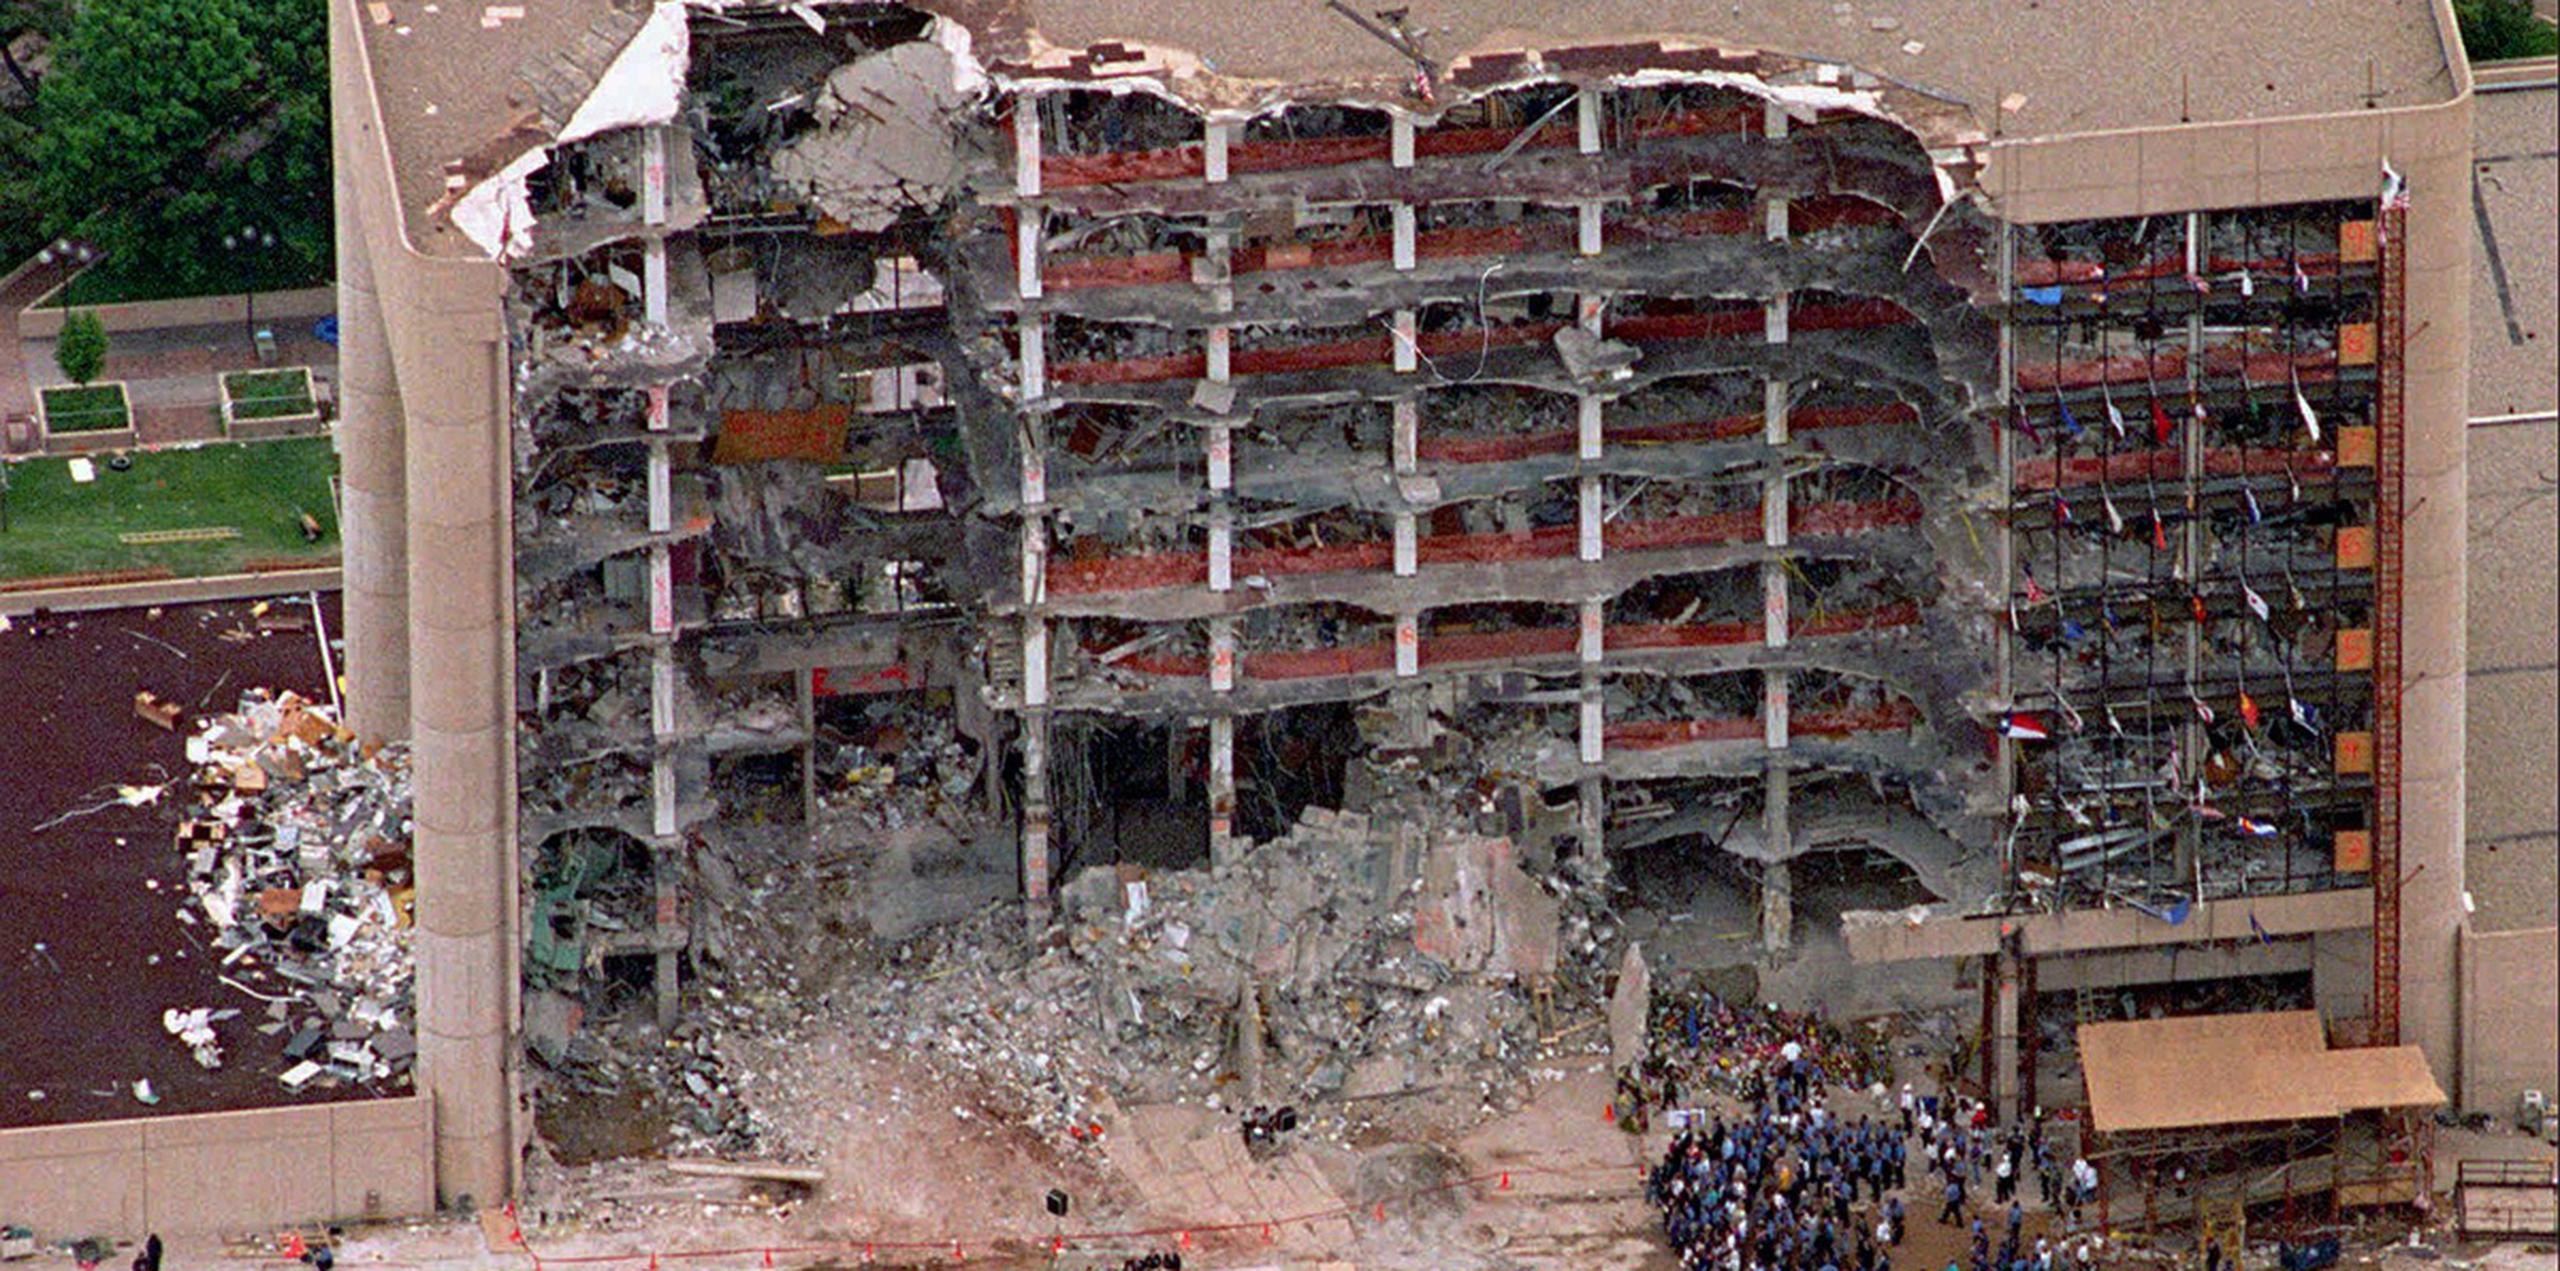 Casi 22 años después de que ocurriera, el atentado de Oklahoma City sigue siendo el incidente de terrorismo interno con más muertos en territorio estadounidense. Murieron 168 personas, incluidos 19 niños. (AP)